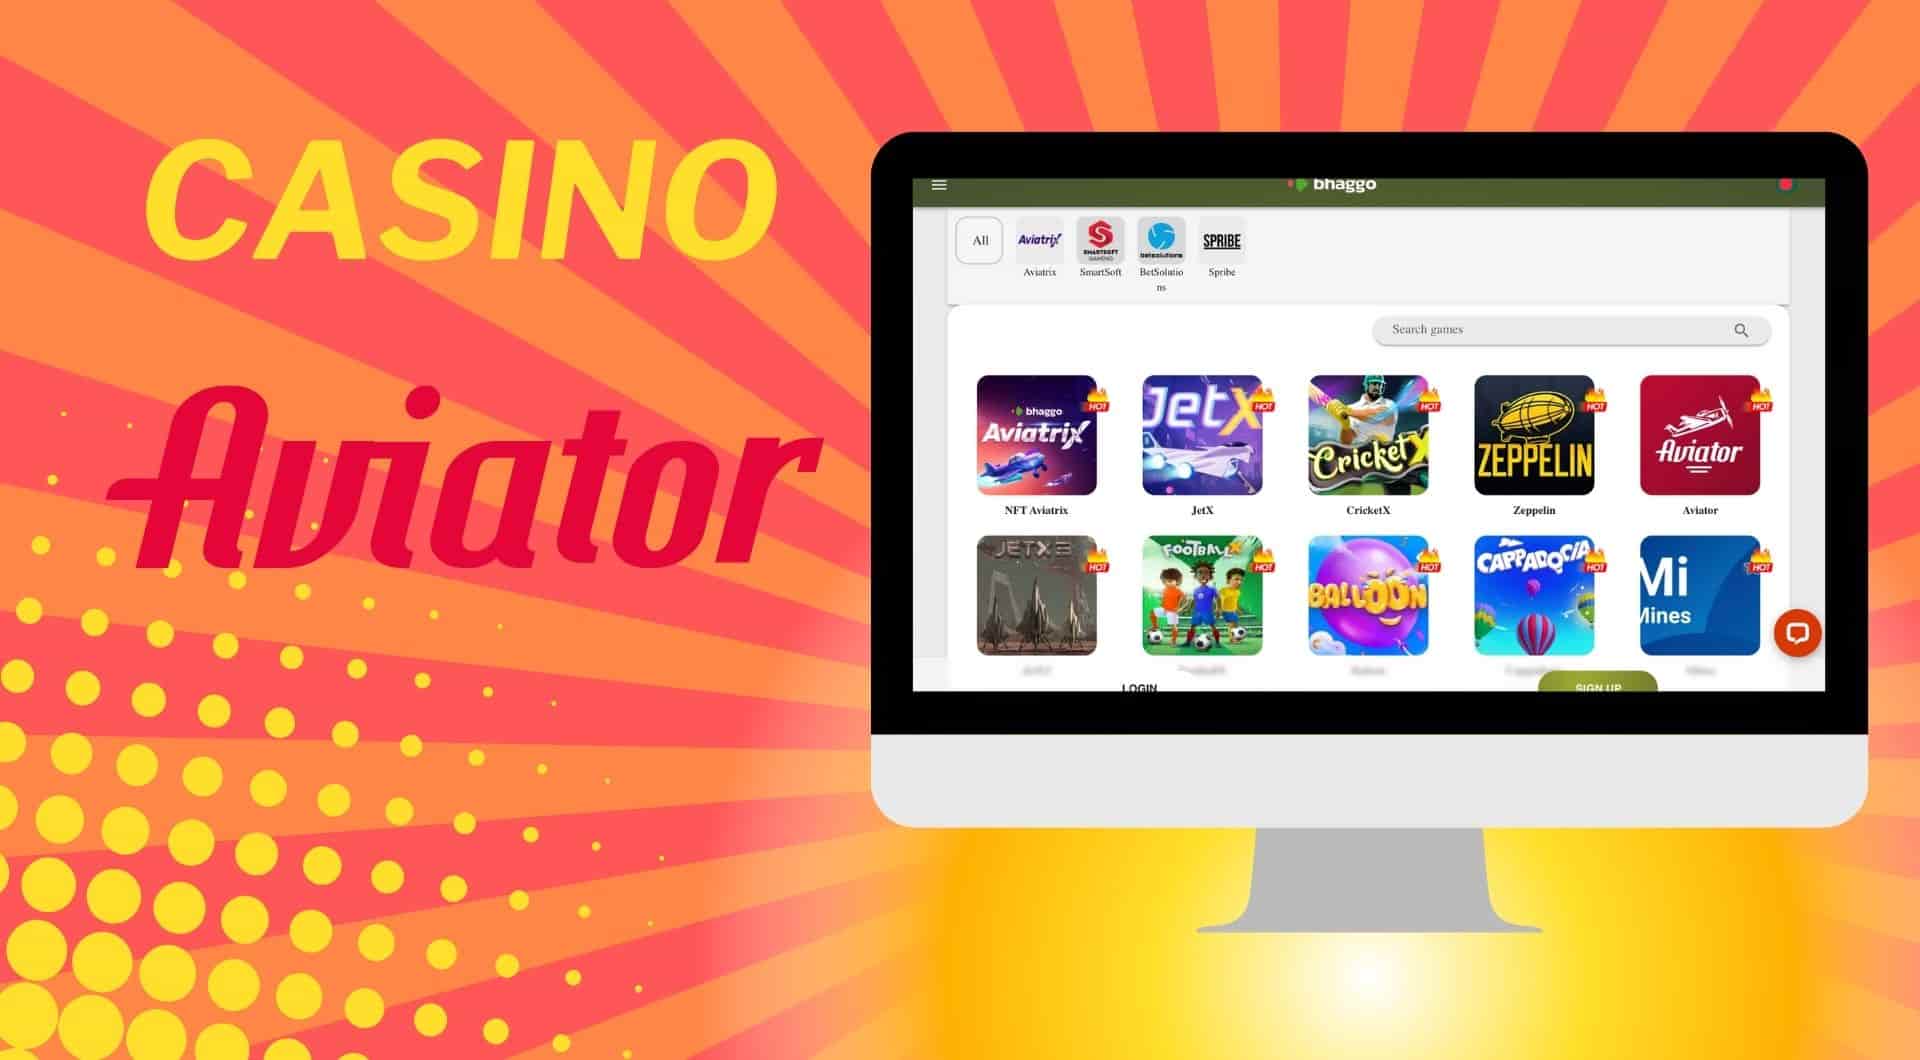 How to play Aviator at Bhaggo Online Casino